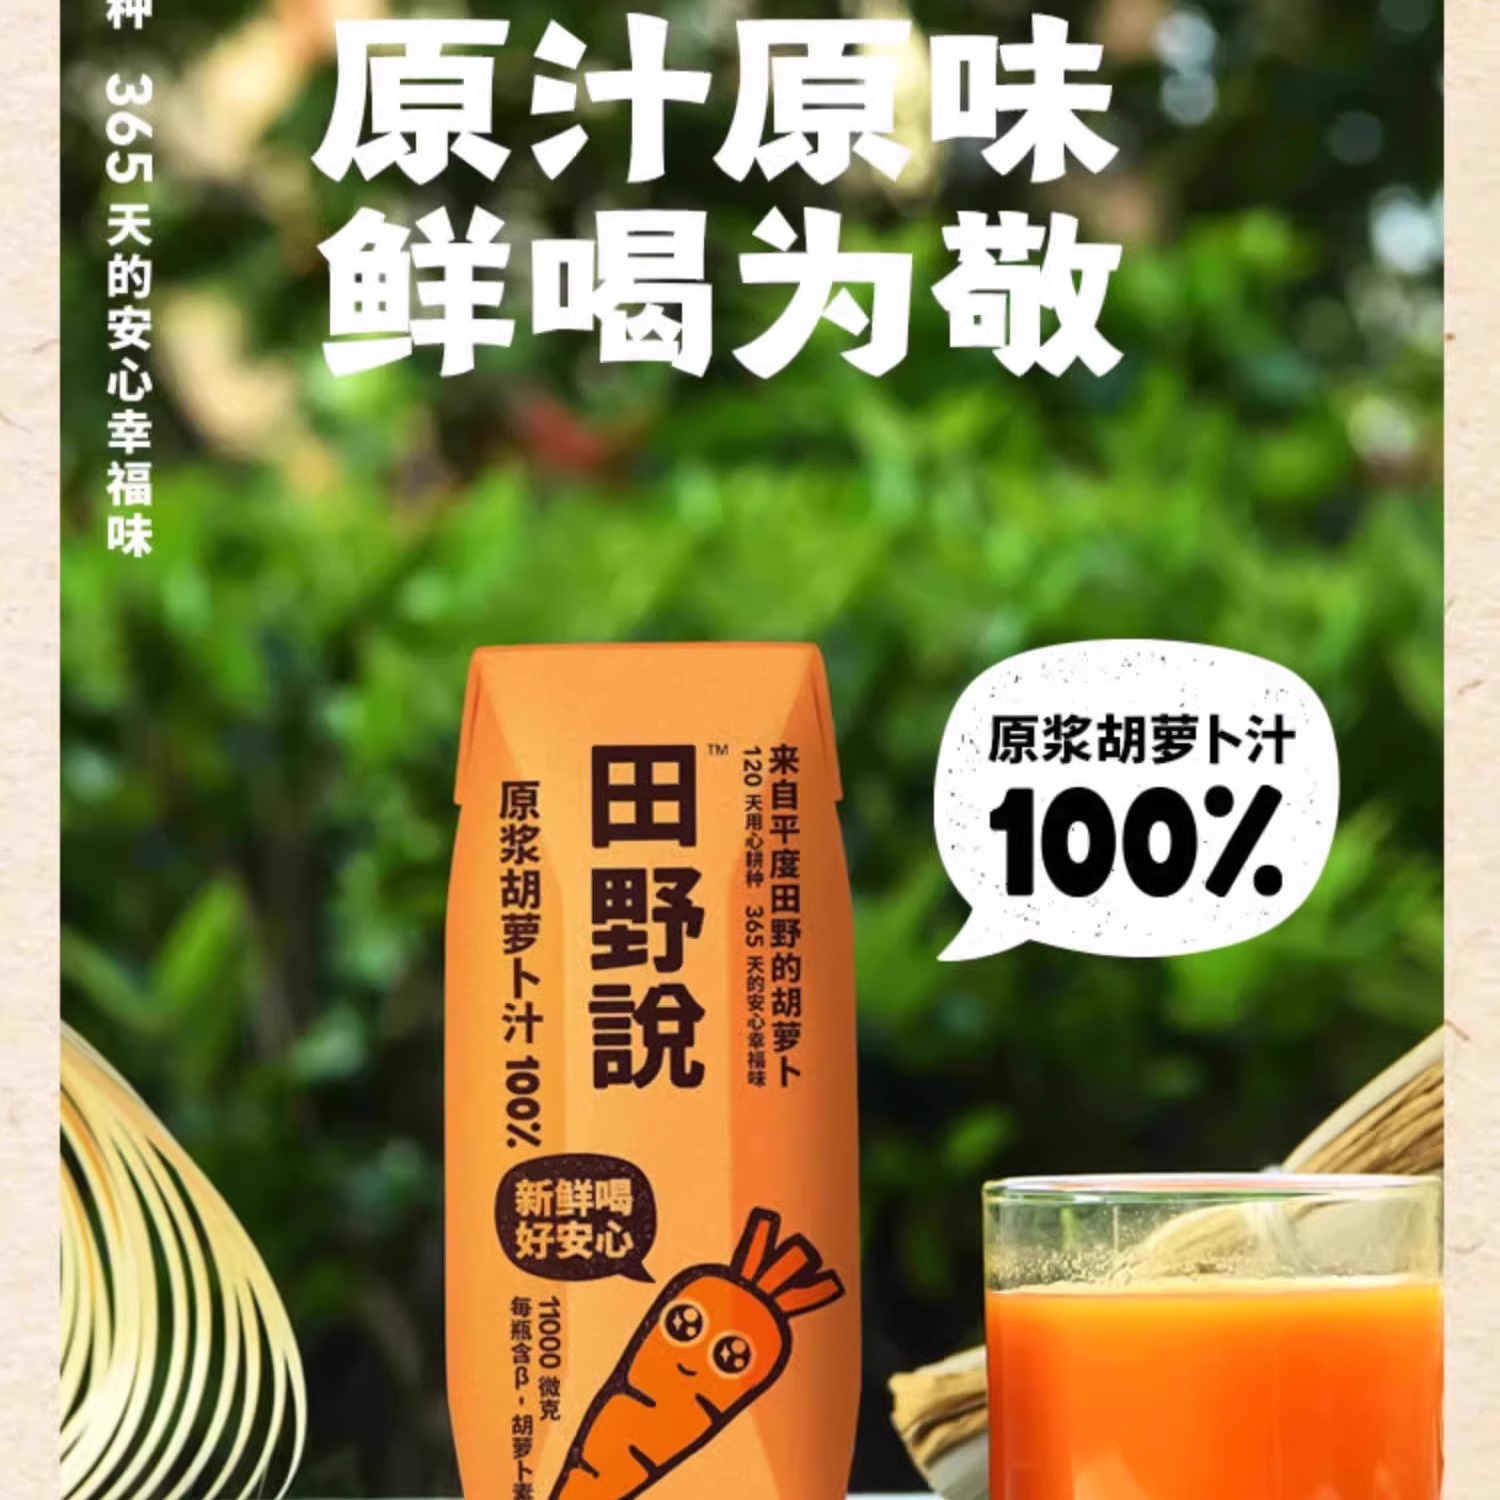 田野说纯胡萝卜汁儿童无添加轻断食纯果蔬汁混合蔬菜汁饮料10瓶 - 图0